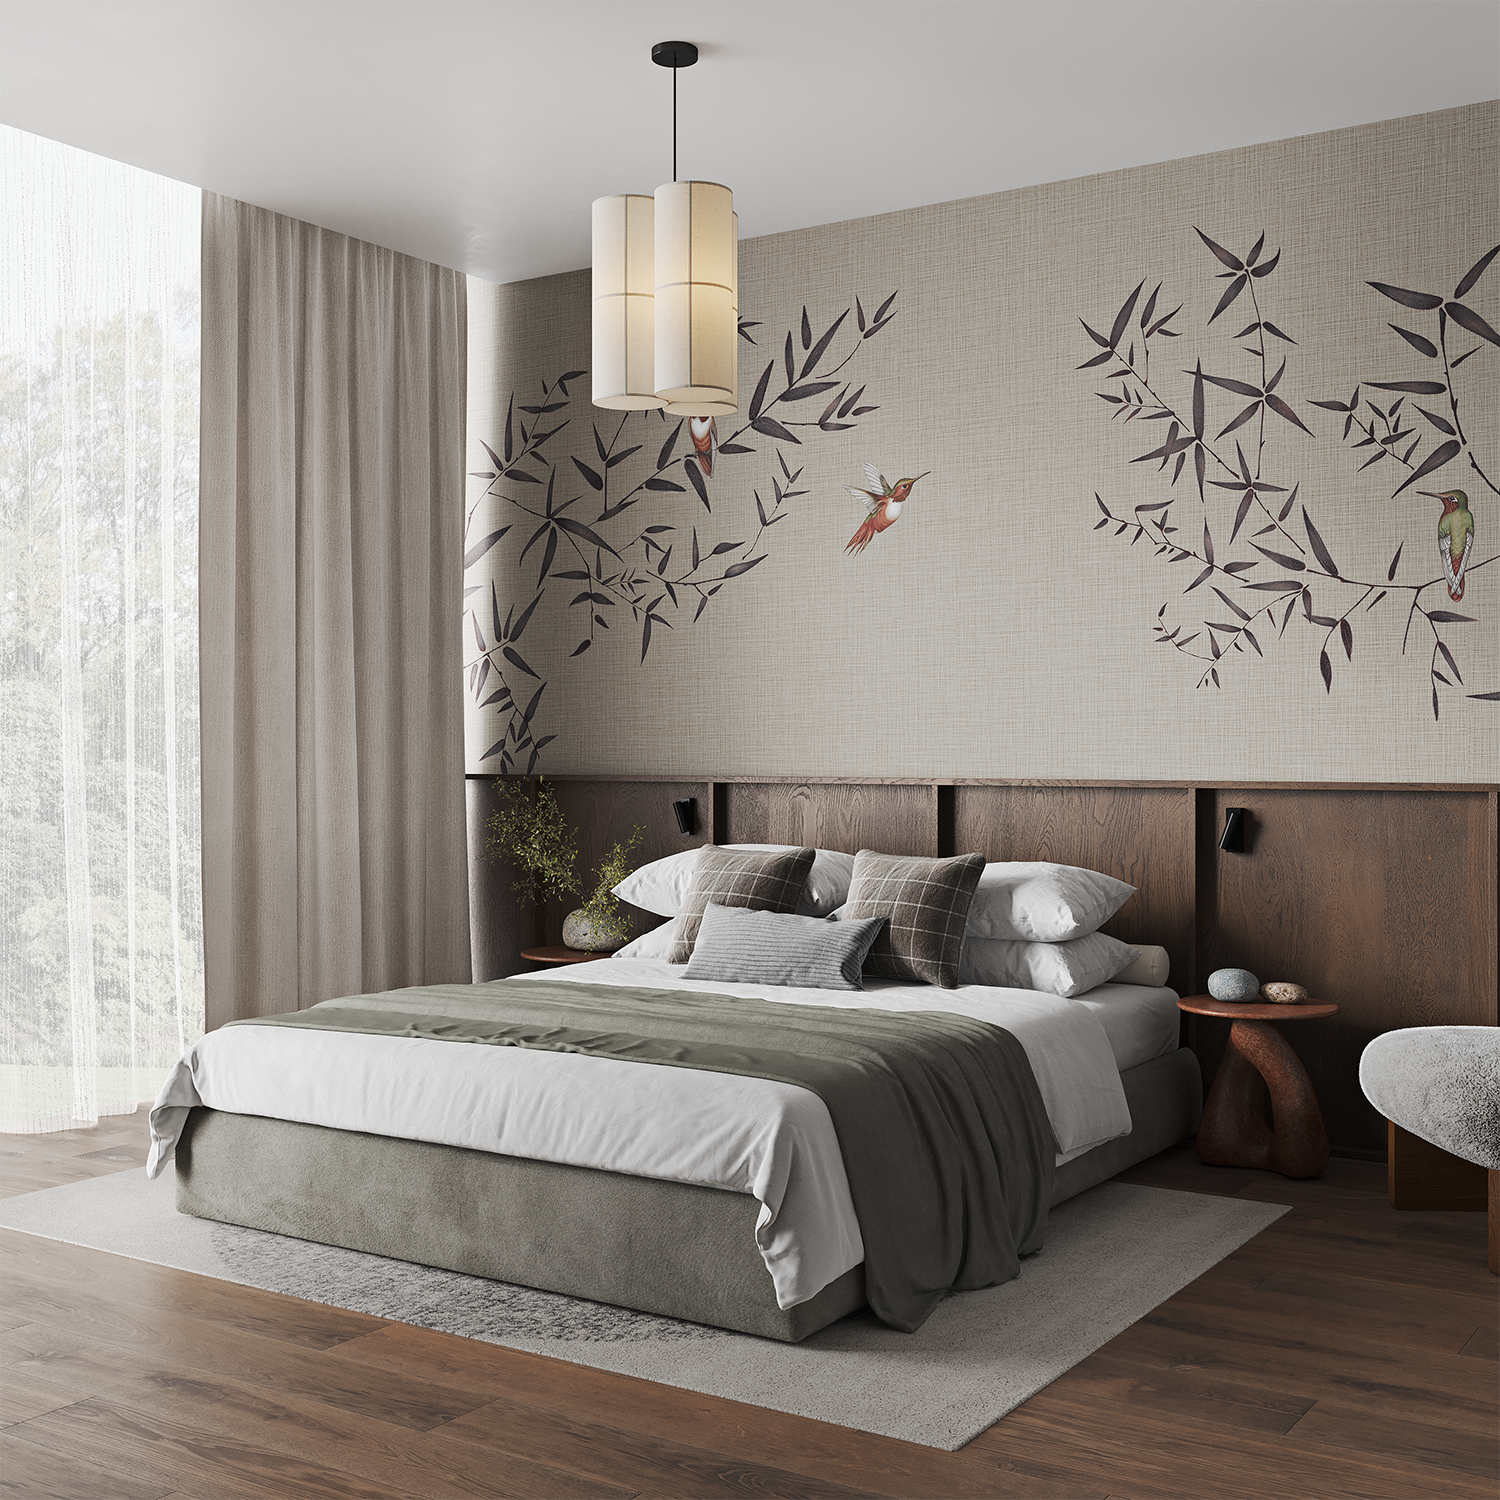 Oriental Birdsong, Animal Mural Wallpaper in bedroom